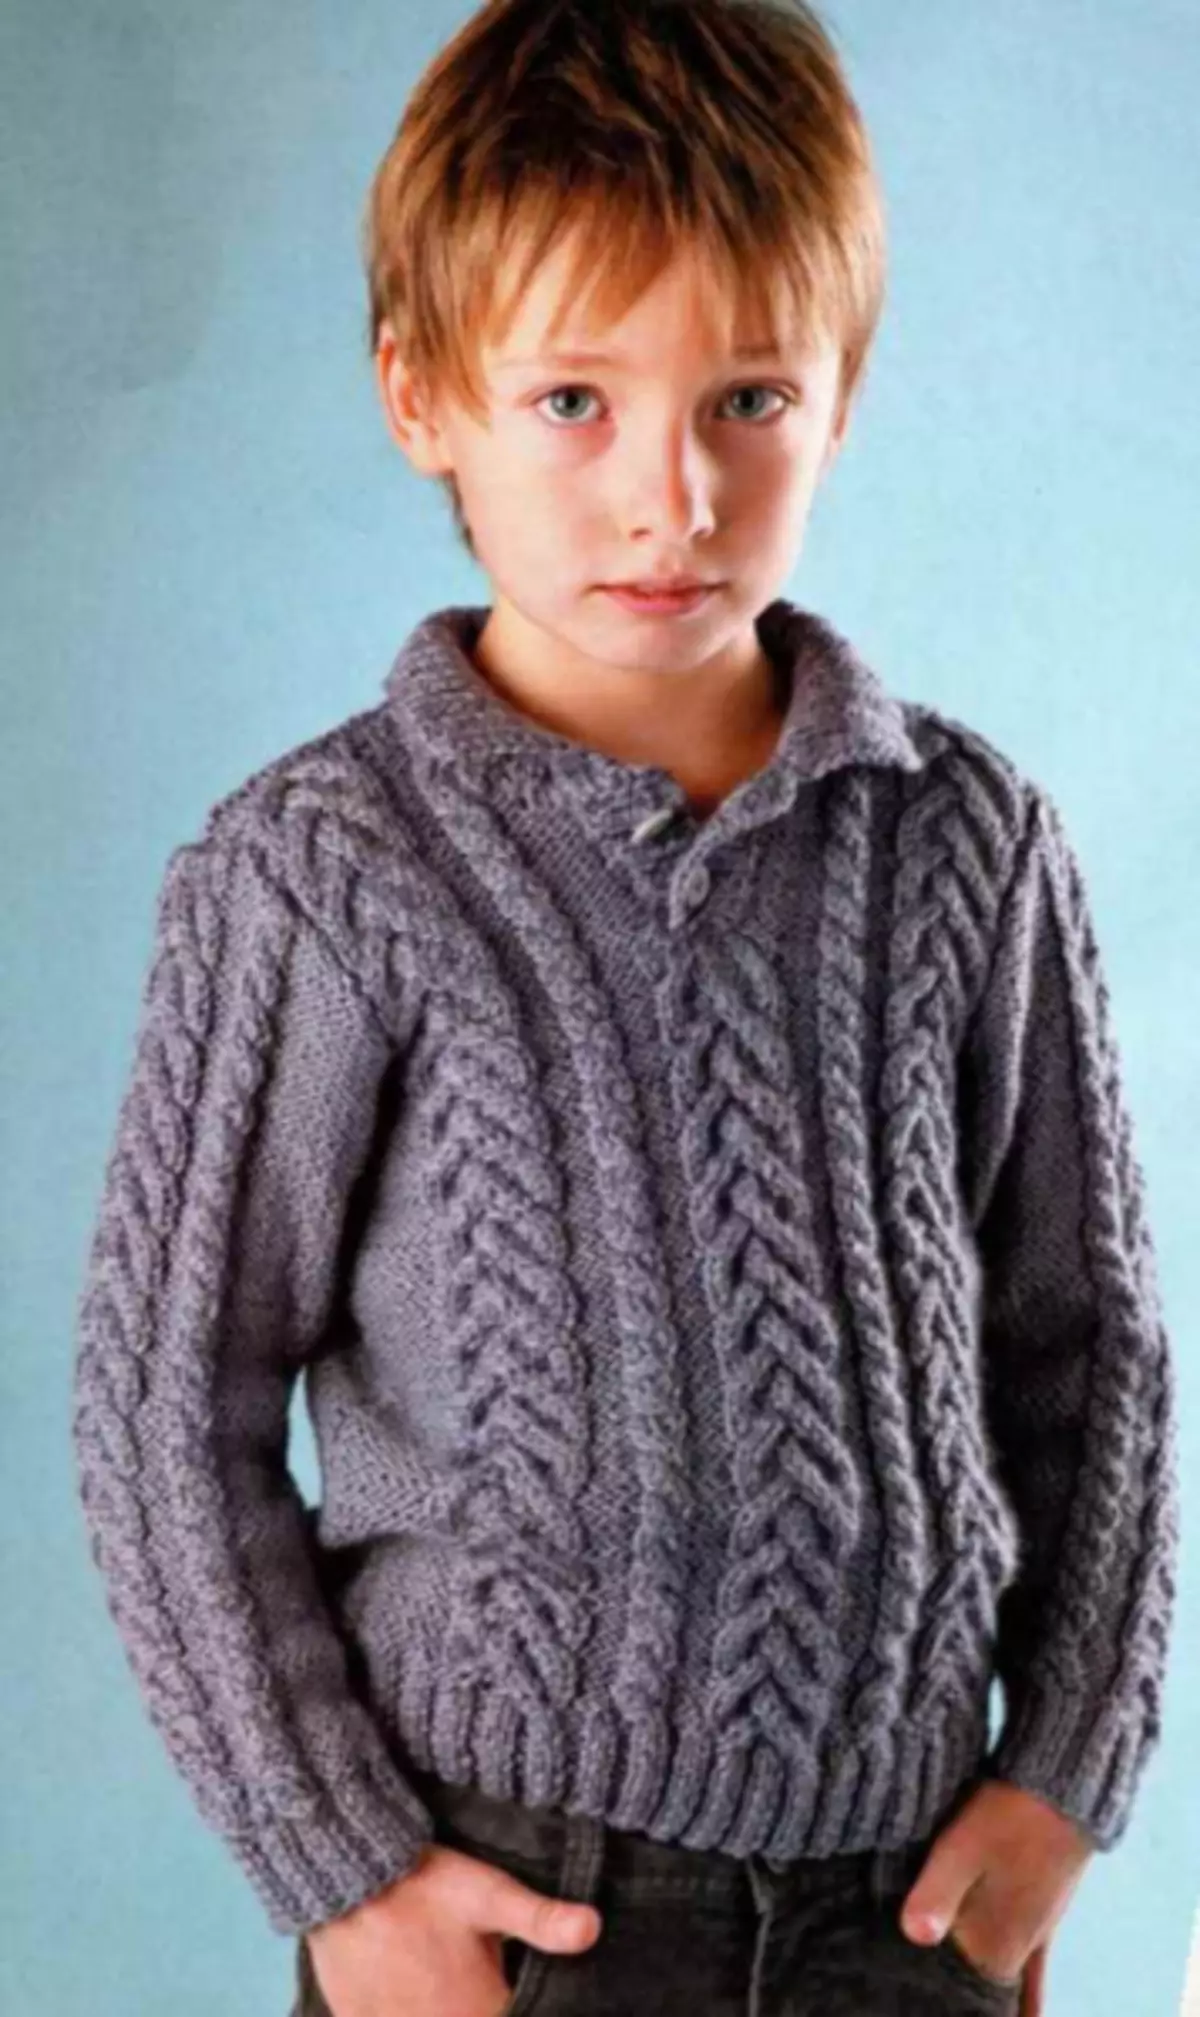 Џемпер за момчето со плетење игли: Rella за бебе 1-3 години со фотографии и видеа